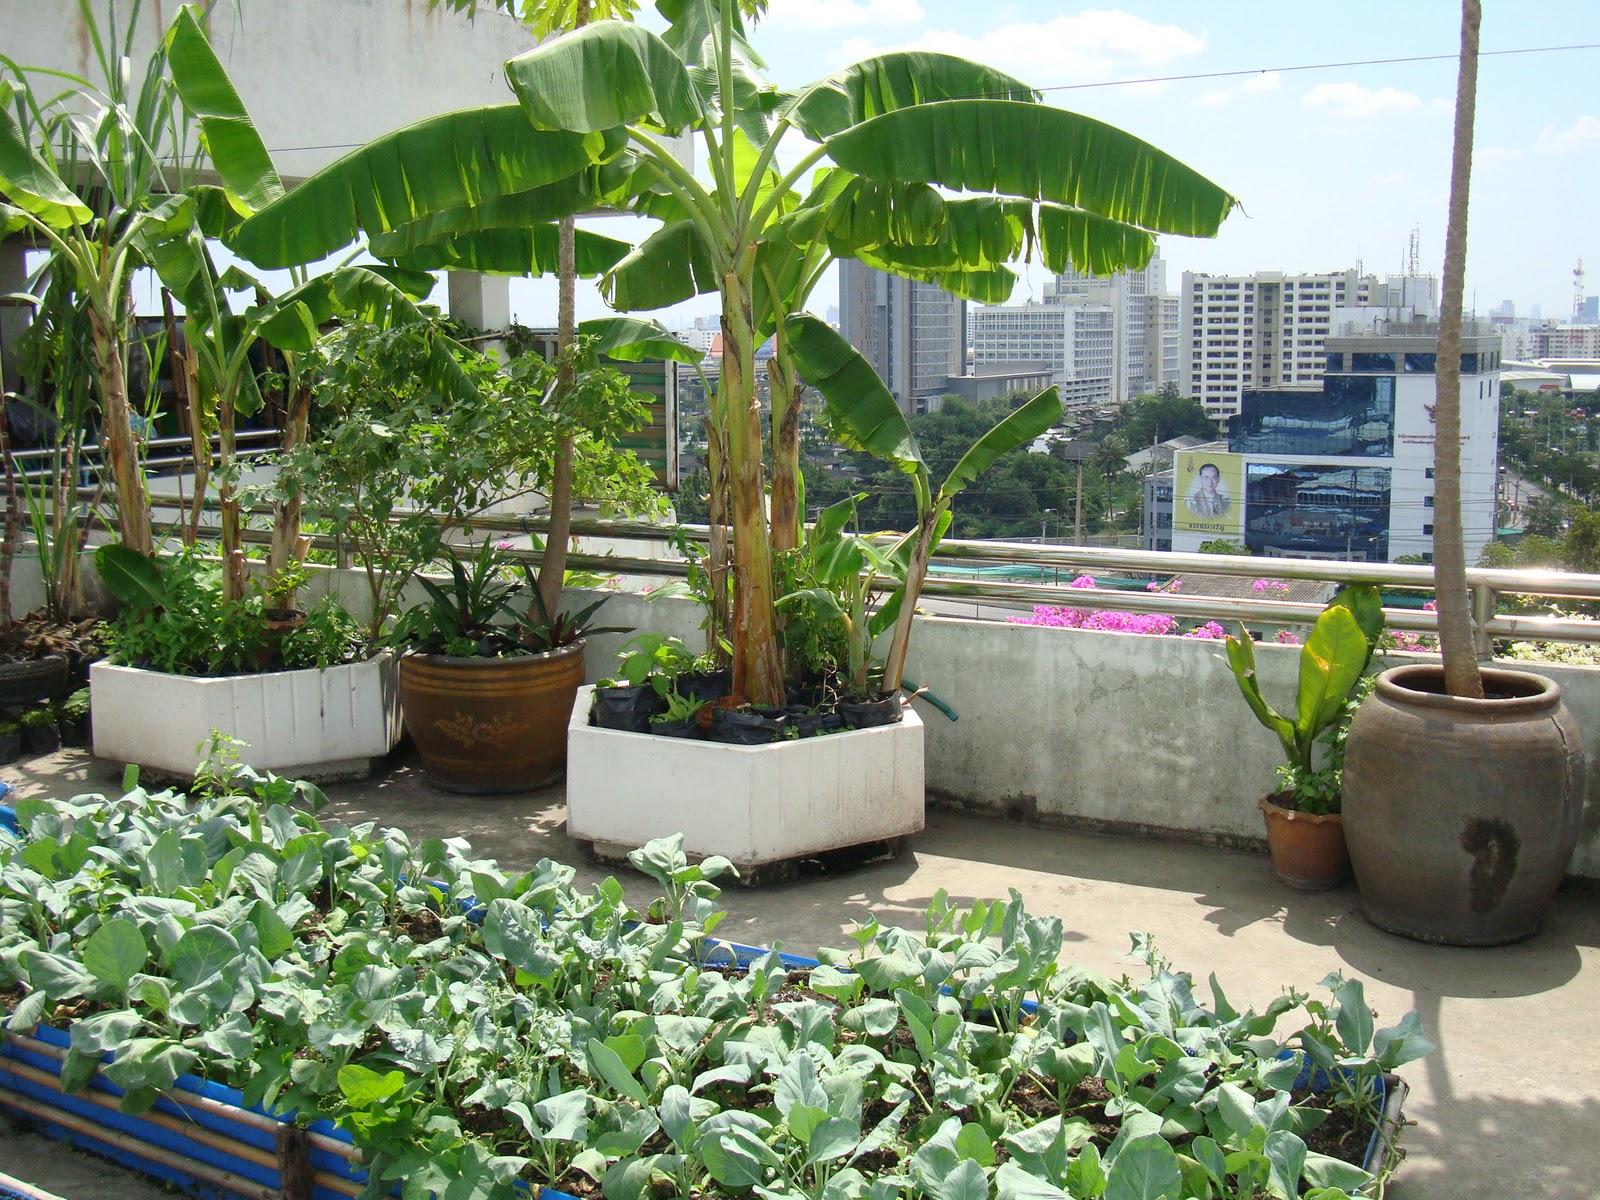 Khu vườn trên sân thượng là một khái niệm mới, độc đáo và sang trọng để tận hưởng thiên nhiên ngay trong không gian sống của bạn. Nếu bạn đang muốn tìm kiếm một đối tác có kinh nghiệm thiết kế khu vườn trên sân thượng đẹp, chất lượng và phù hợp với phong cách sống của bạn, hãy đến với chúng tôi. Chúng tôi cam kết sẽ mang đến cho bạn không gian sống xanh mát và đầy sáng tạo.